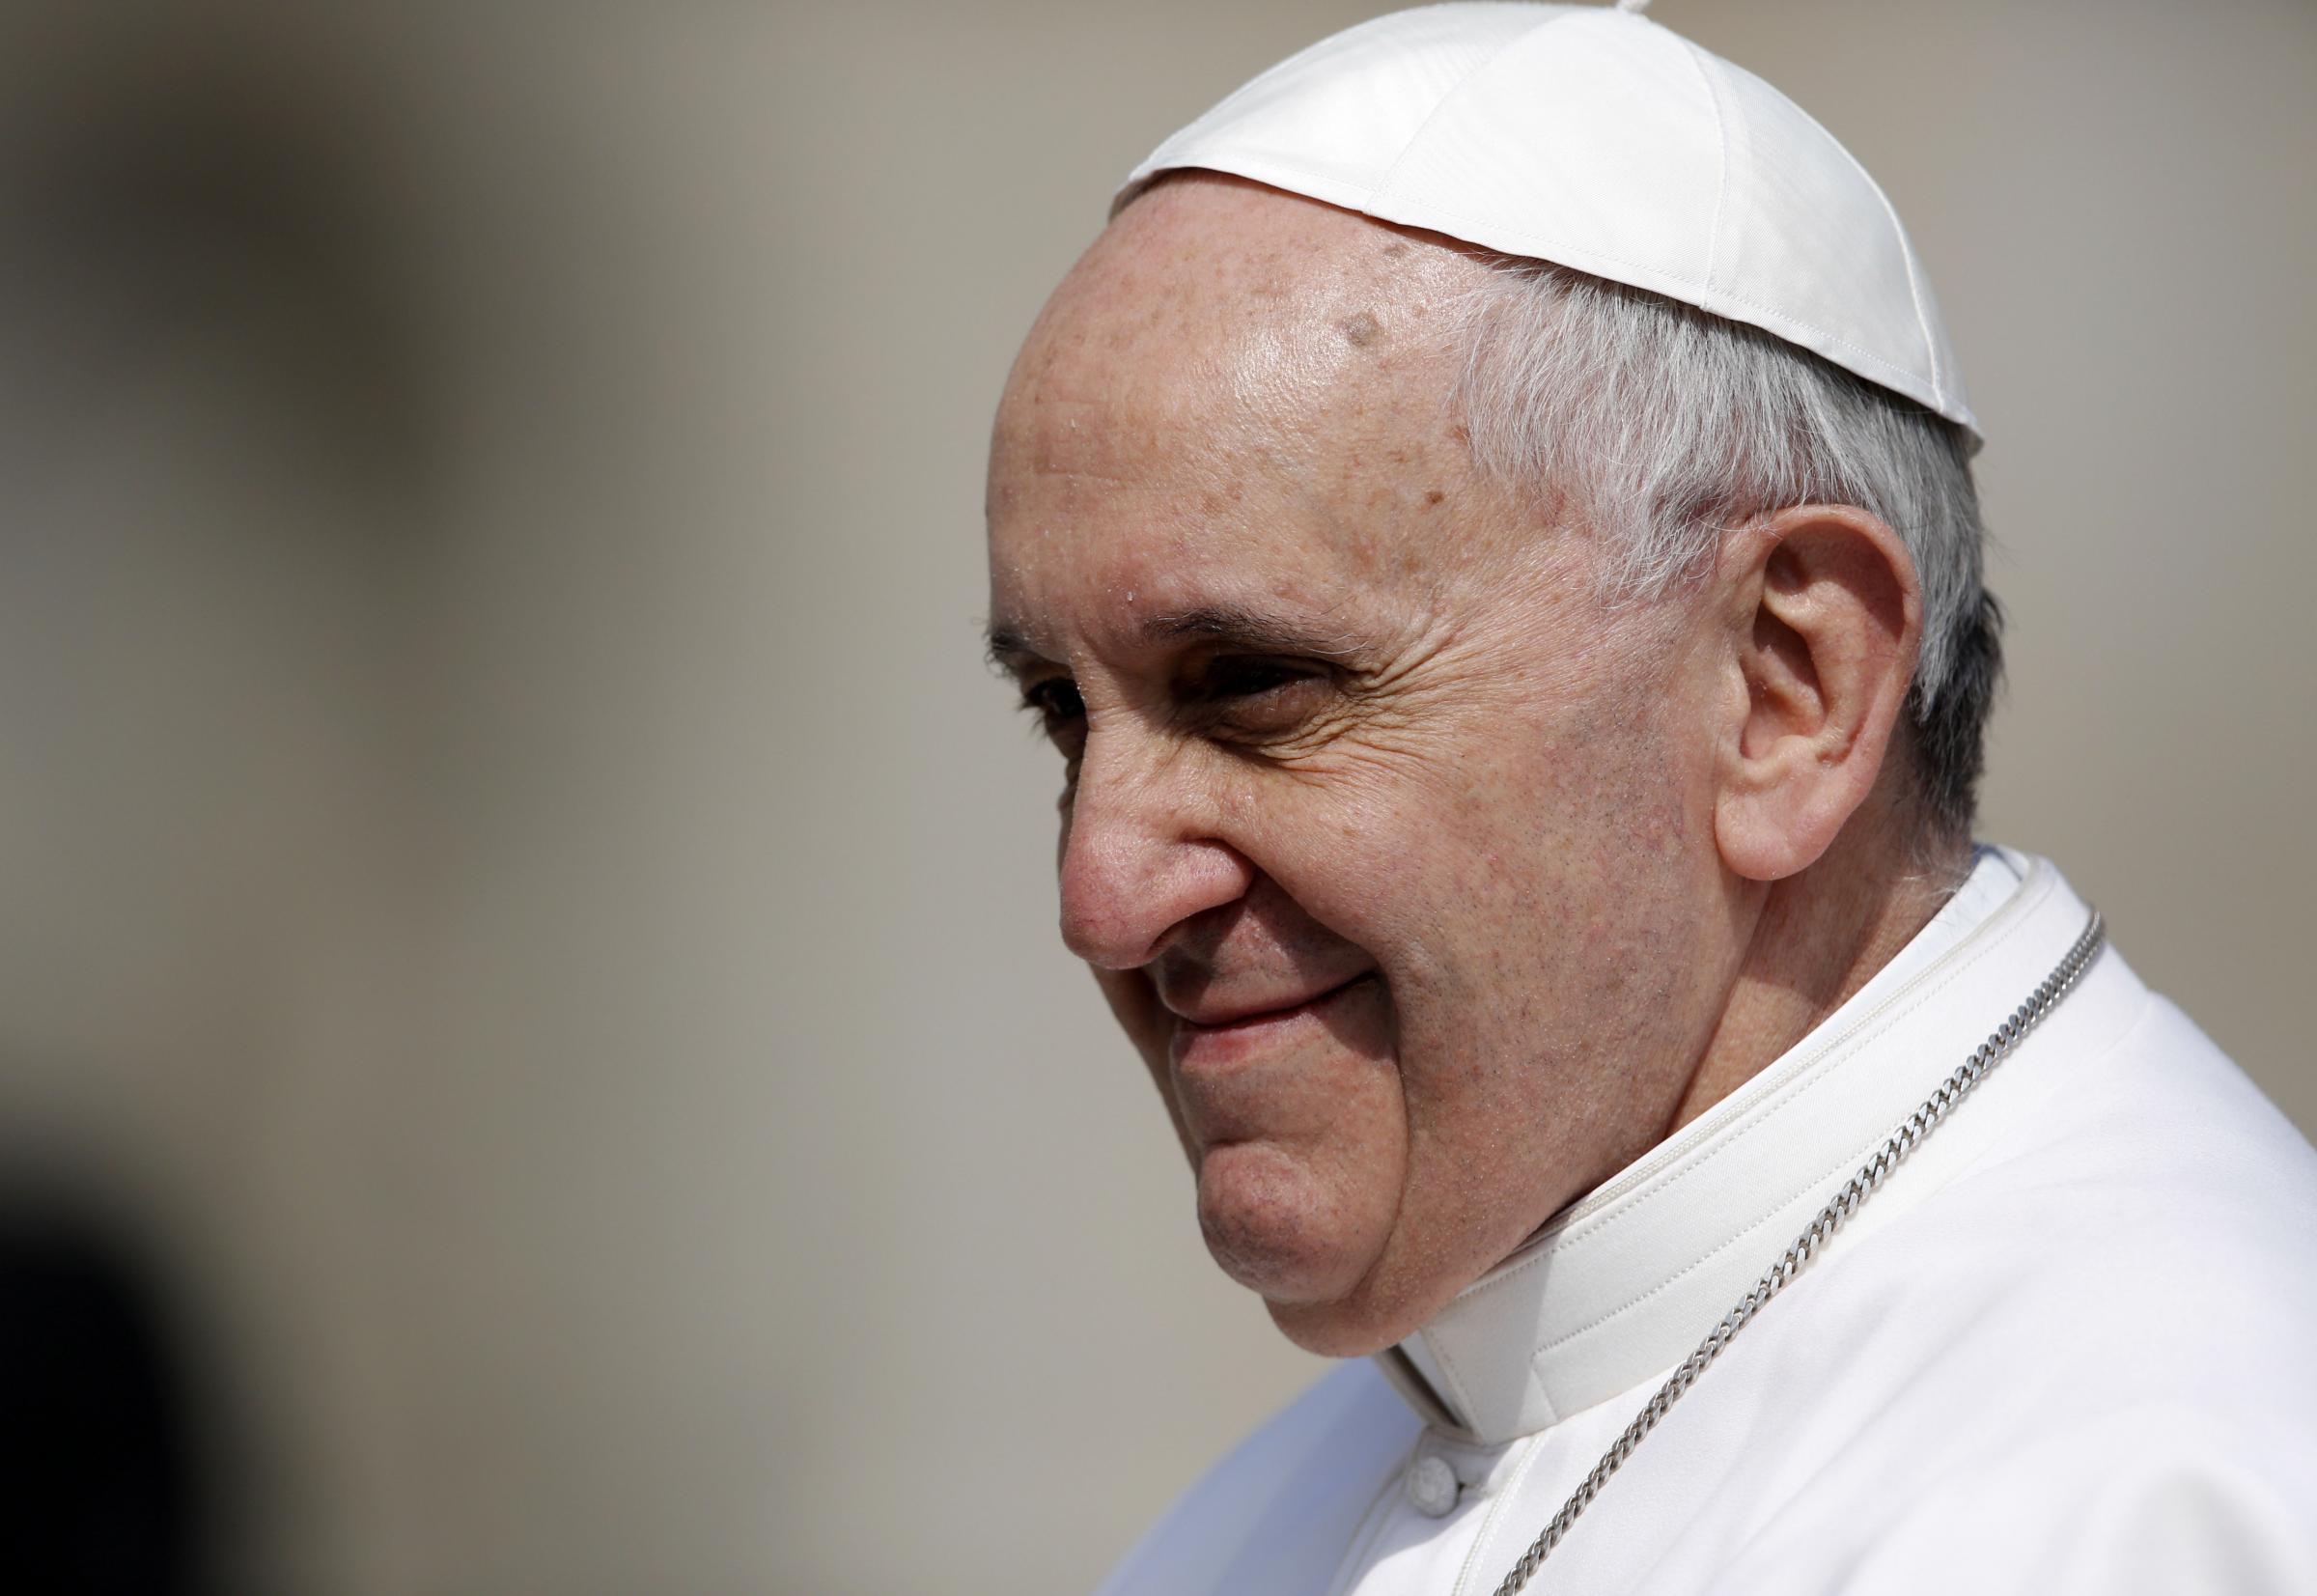  Papa Francesco: “Gesù ci chiede di pregare per chi ci tratta male”